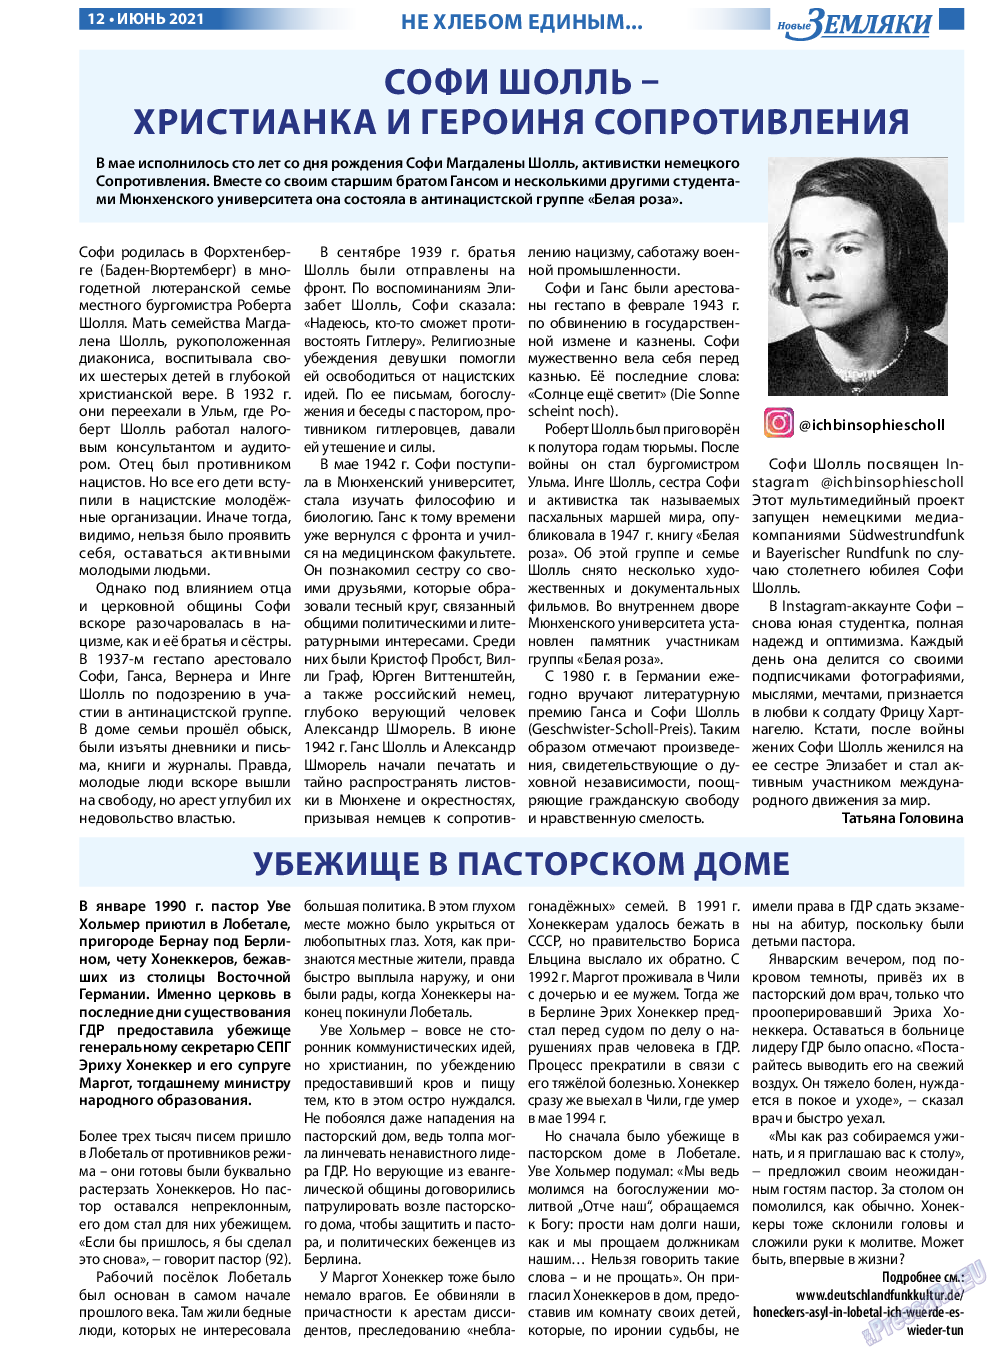 Новые Земляки, газета. 2021 №6 стр.12